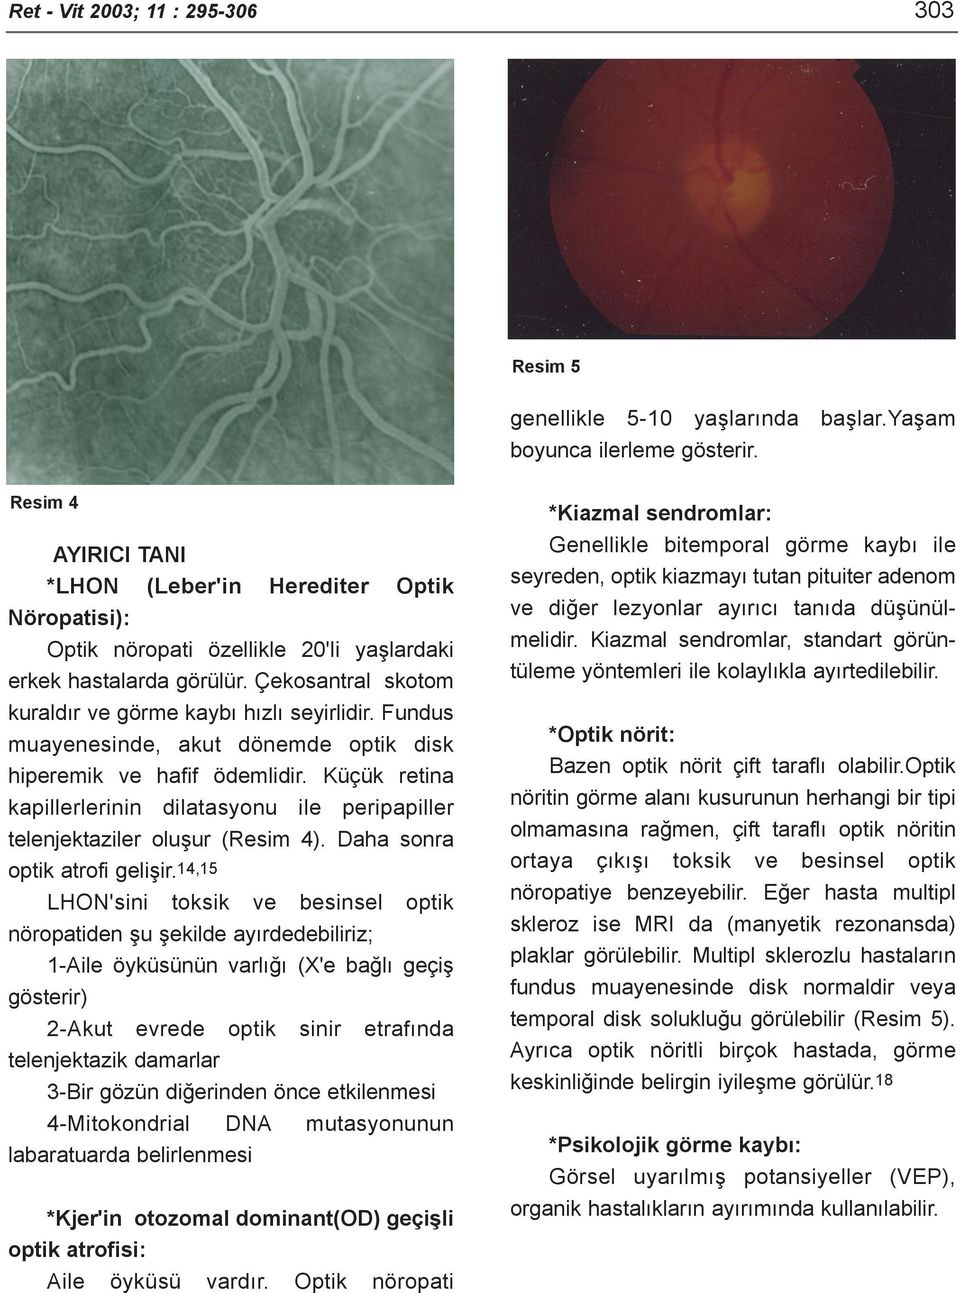 Fundus muayenesinde, akut dönemde optik disk hiperemik ve hafif ödemlidir. Küçük retina kapillerlerinin dilatasyonu ile peripapiller telenjektaziler oluþur (Resim 4). Daha sonra optik atrofi geliþir.